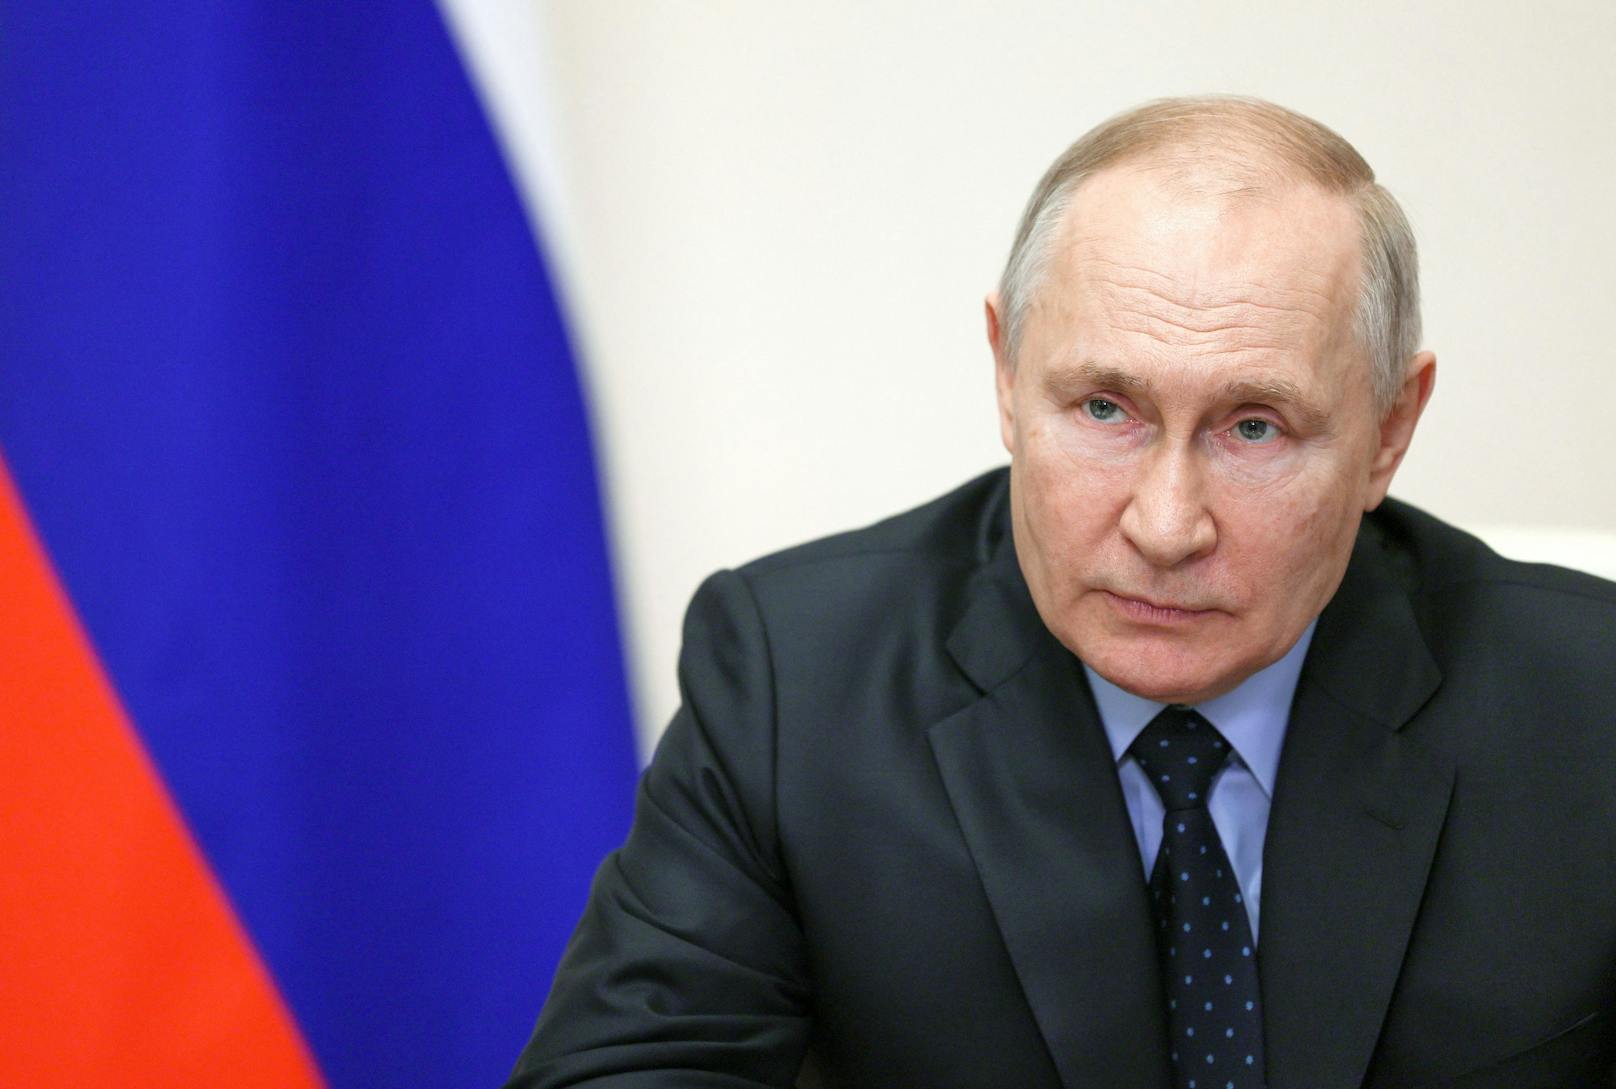 Putin gesteht "negative" Folgen durch Sanktionen ein